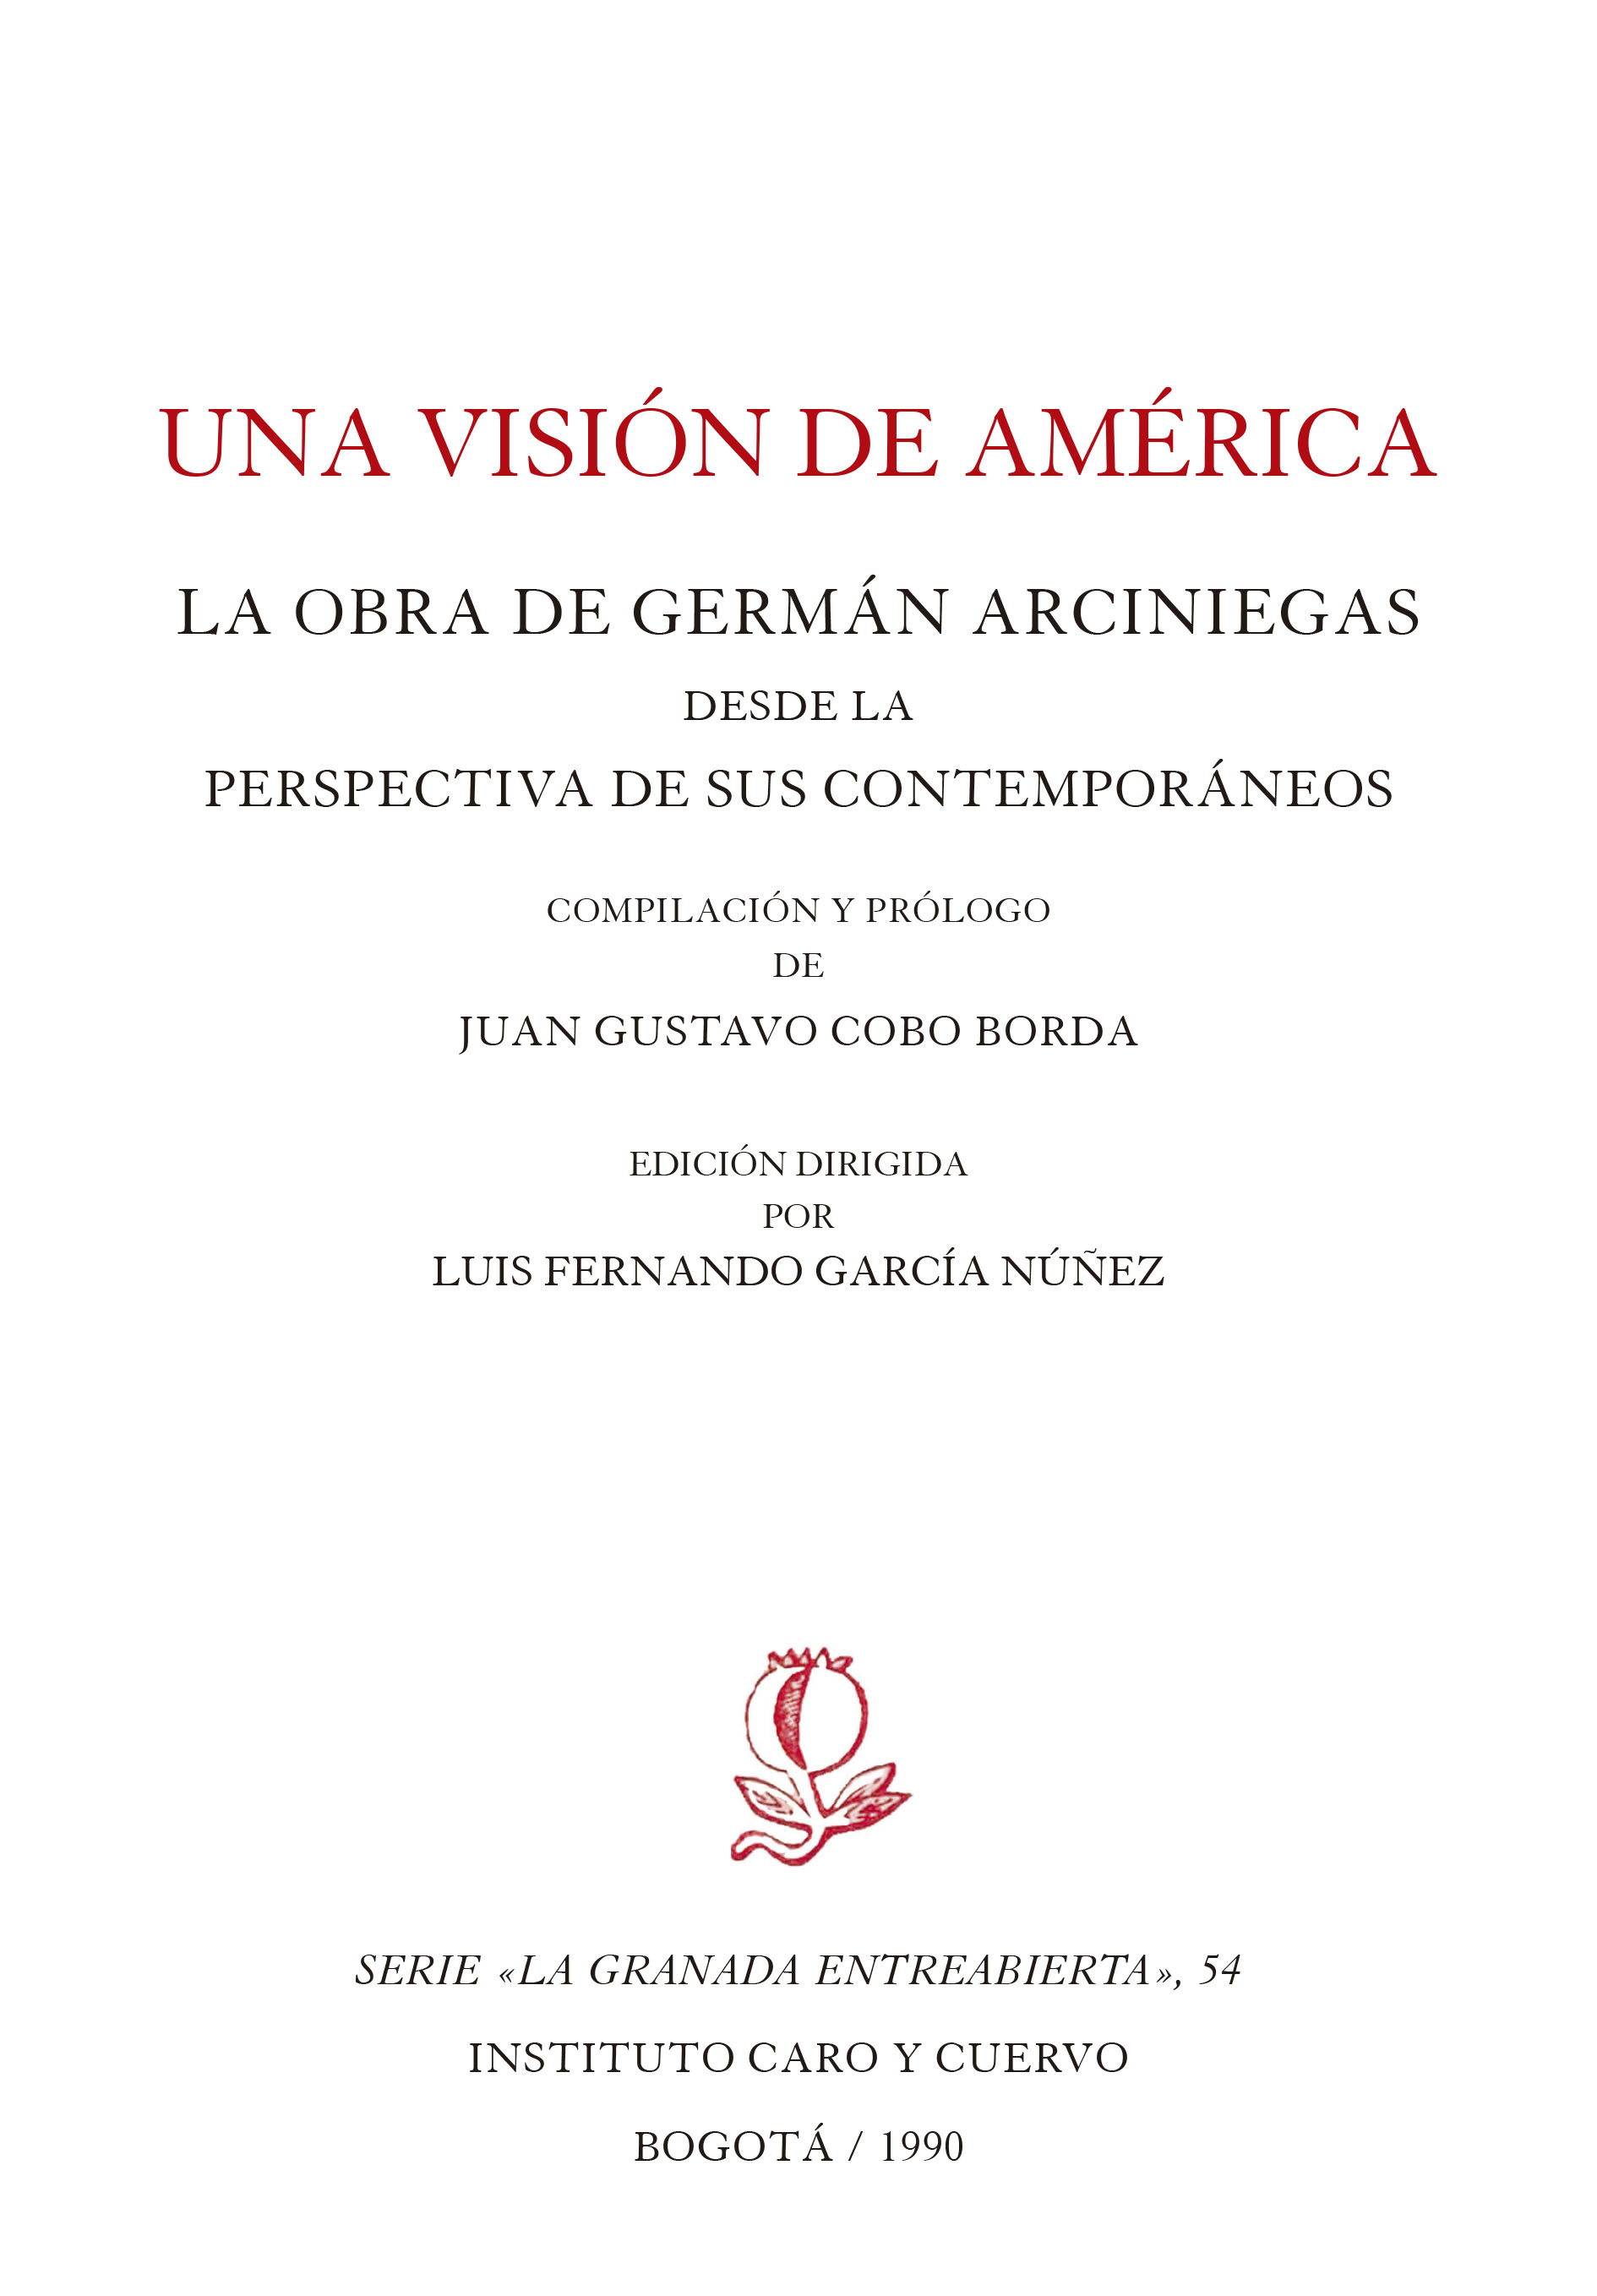 Una visión de América. La obra de Germán Arciniegas desde la perspectiva de sus contemporáneos